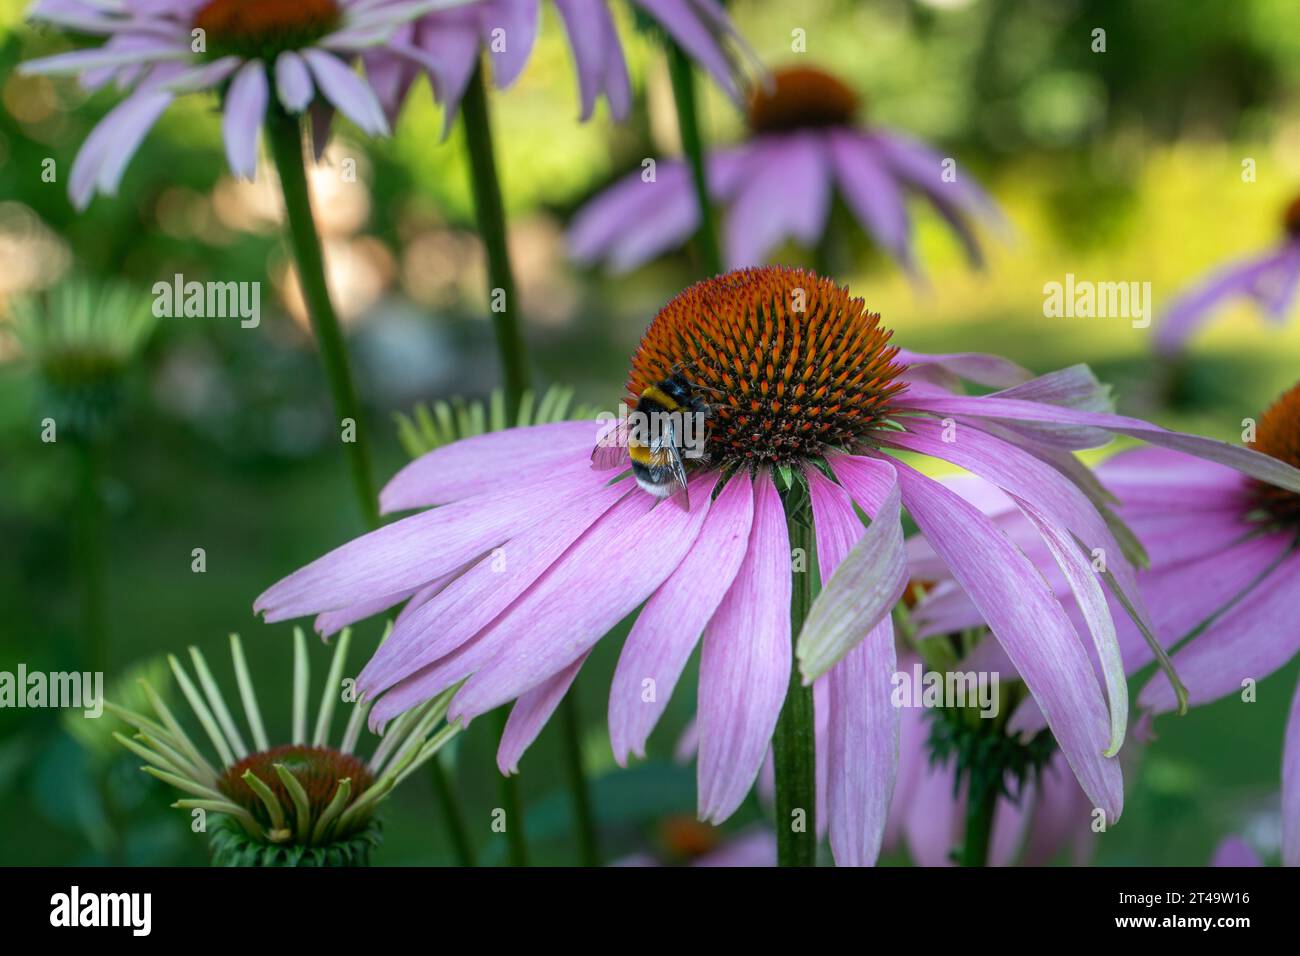 L'echinacea è un gruppo di piante da fiore preferite dalle api per la raccolta del nettare. Contiene principi attivi che aumentano la funzione immunitaria e hanno horm Foto Stock